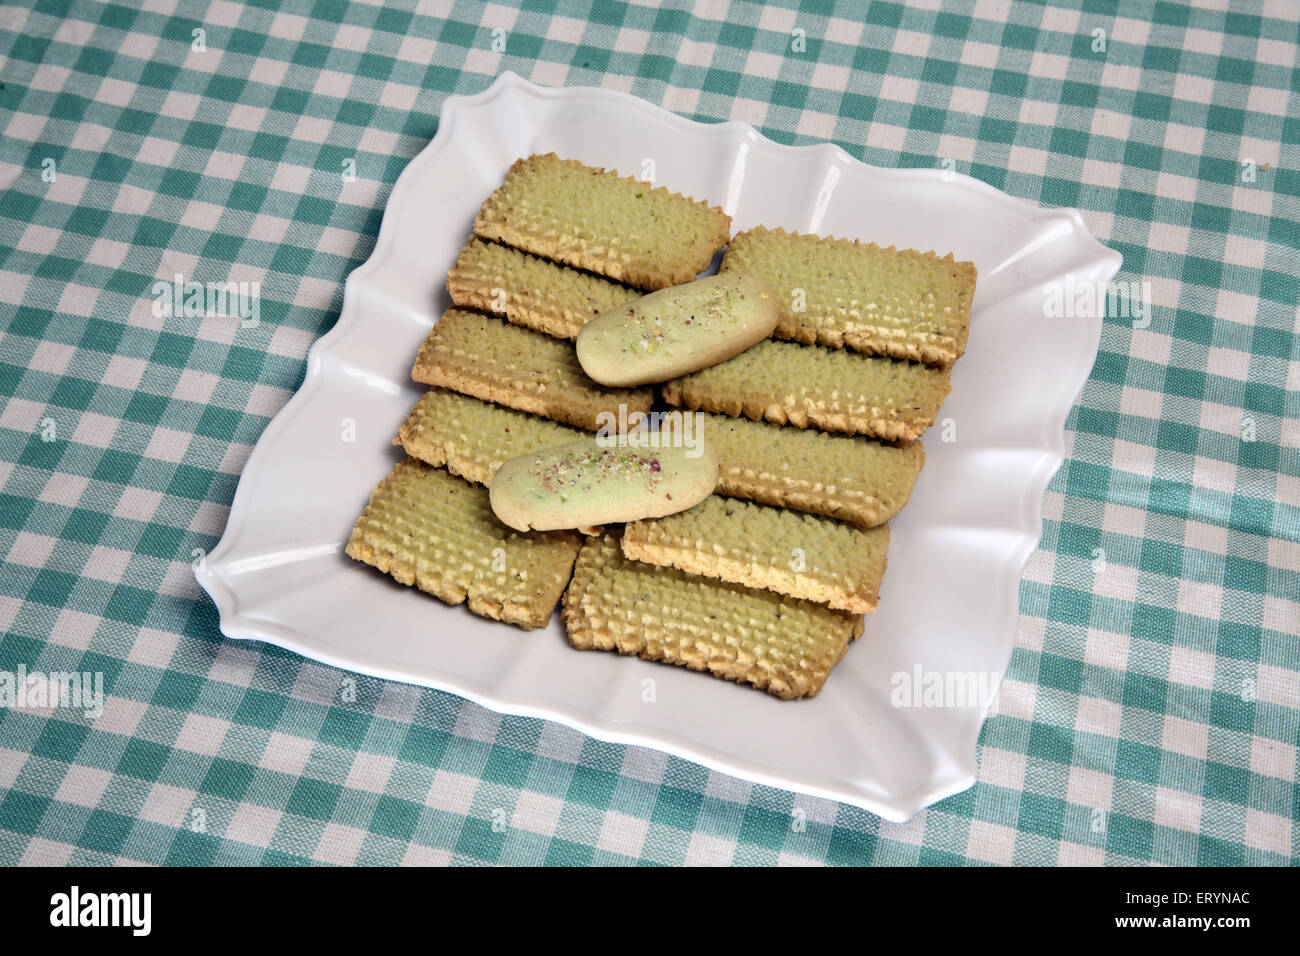 Biscuits pistache en plaque blanche Inde PR# 743AH Banque D'Images